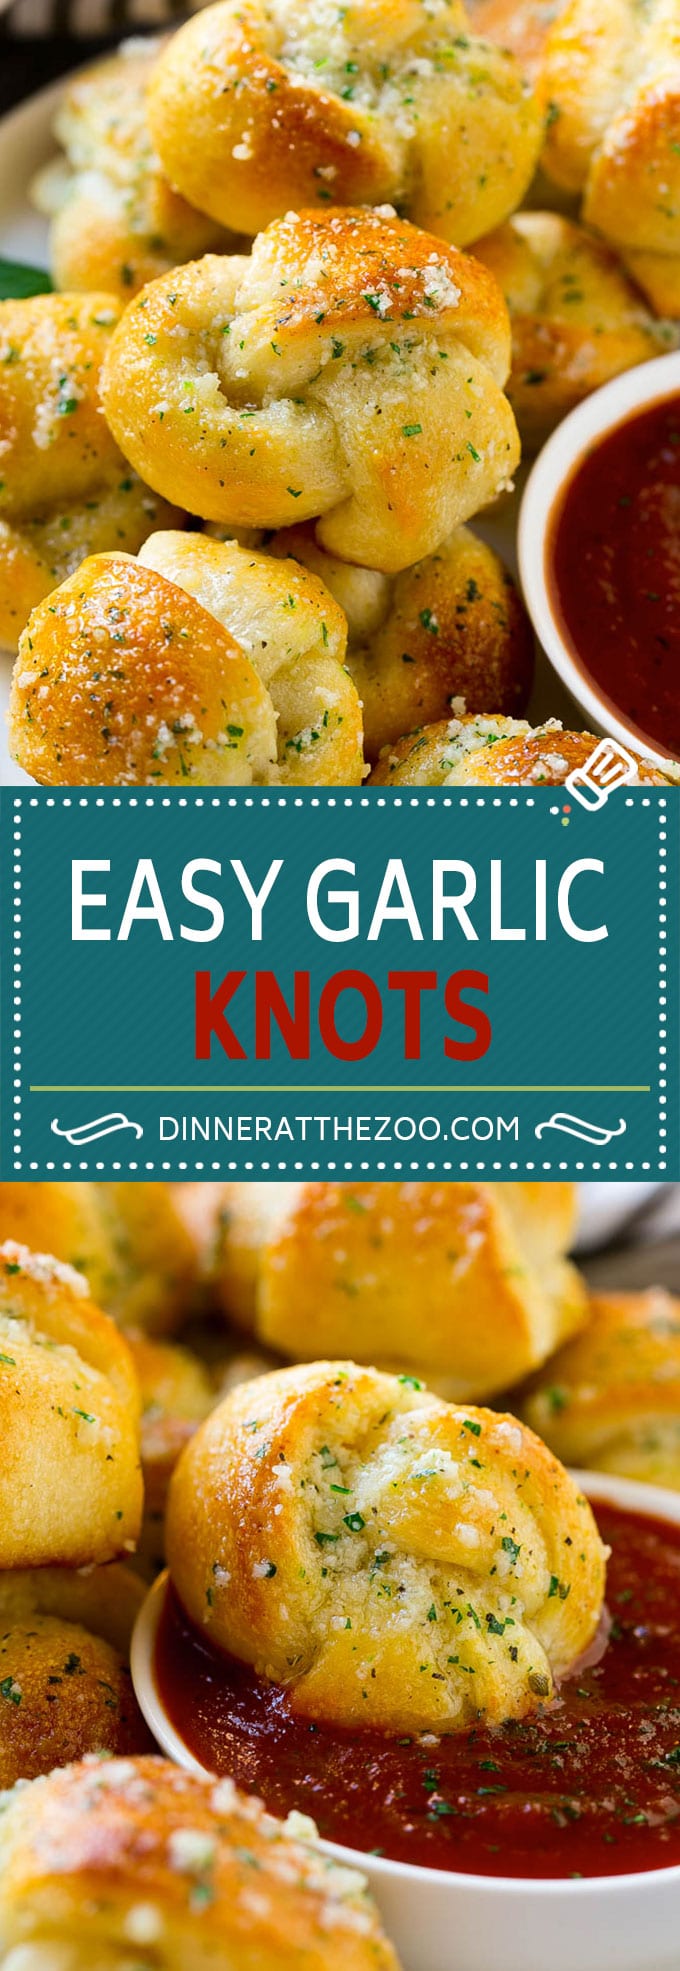 Garlic Knots Recipe | Garlic Rolls | Garlic Butter Rolls | Garlic Bread Recipe #garlic #garlicbread #garlicknots #breadsticks #dinneratthezoo